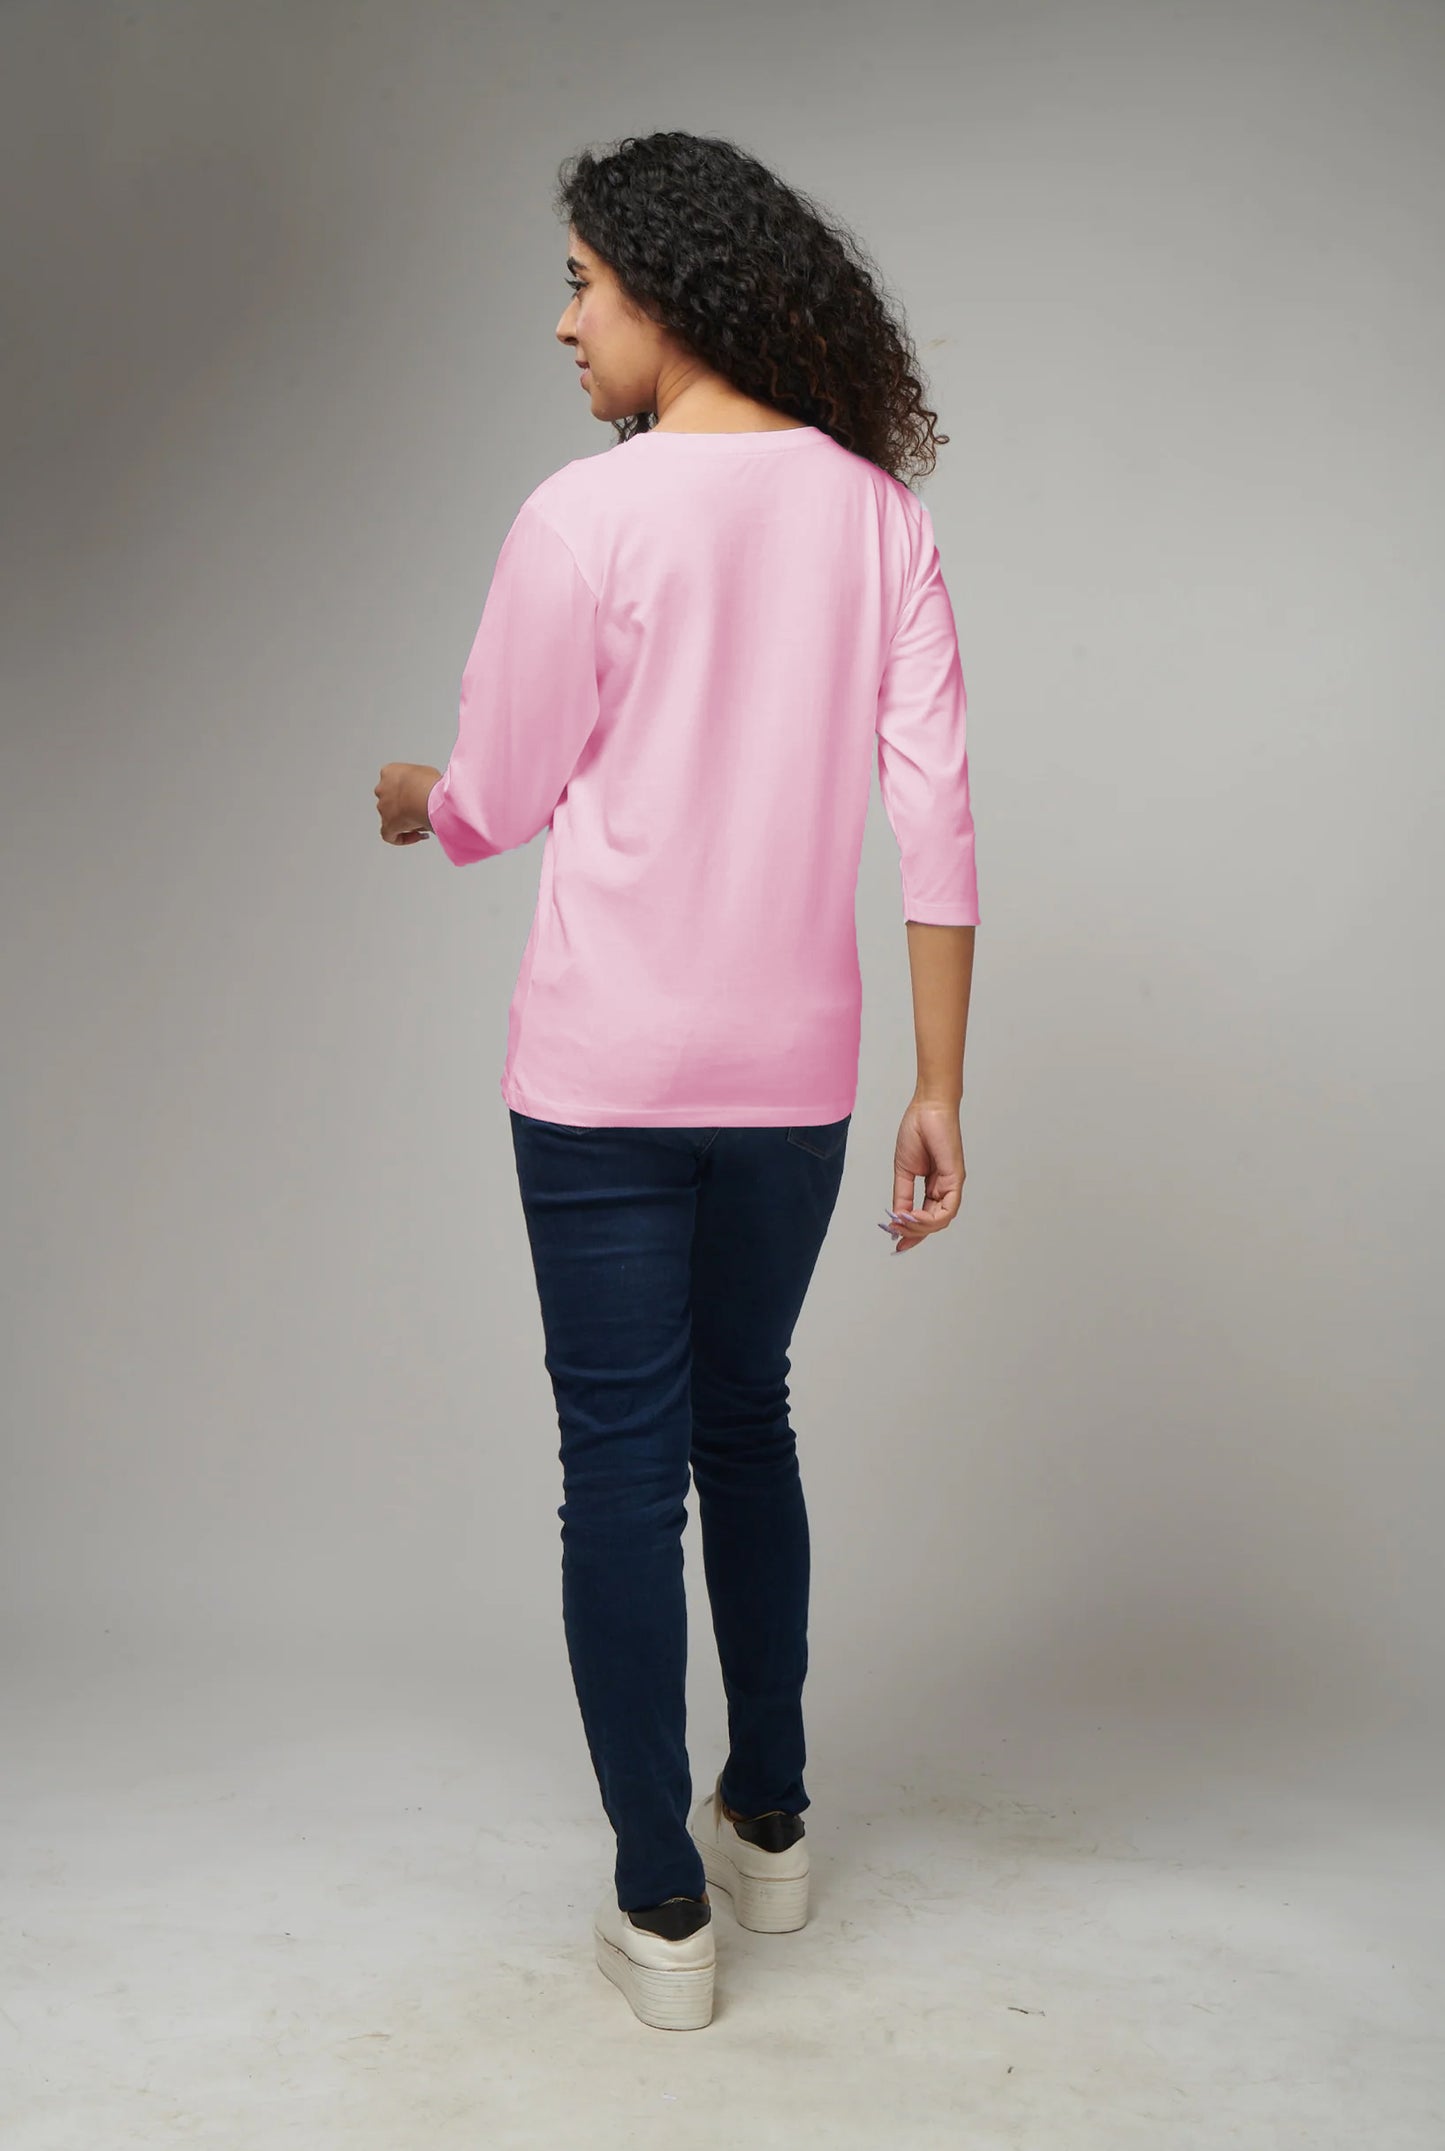 Women's Basic Pink Full Sleeves T-Shirt